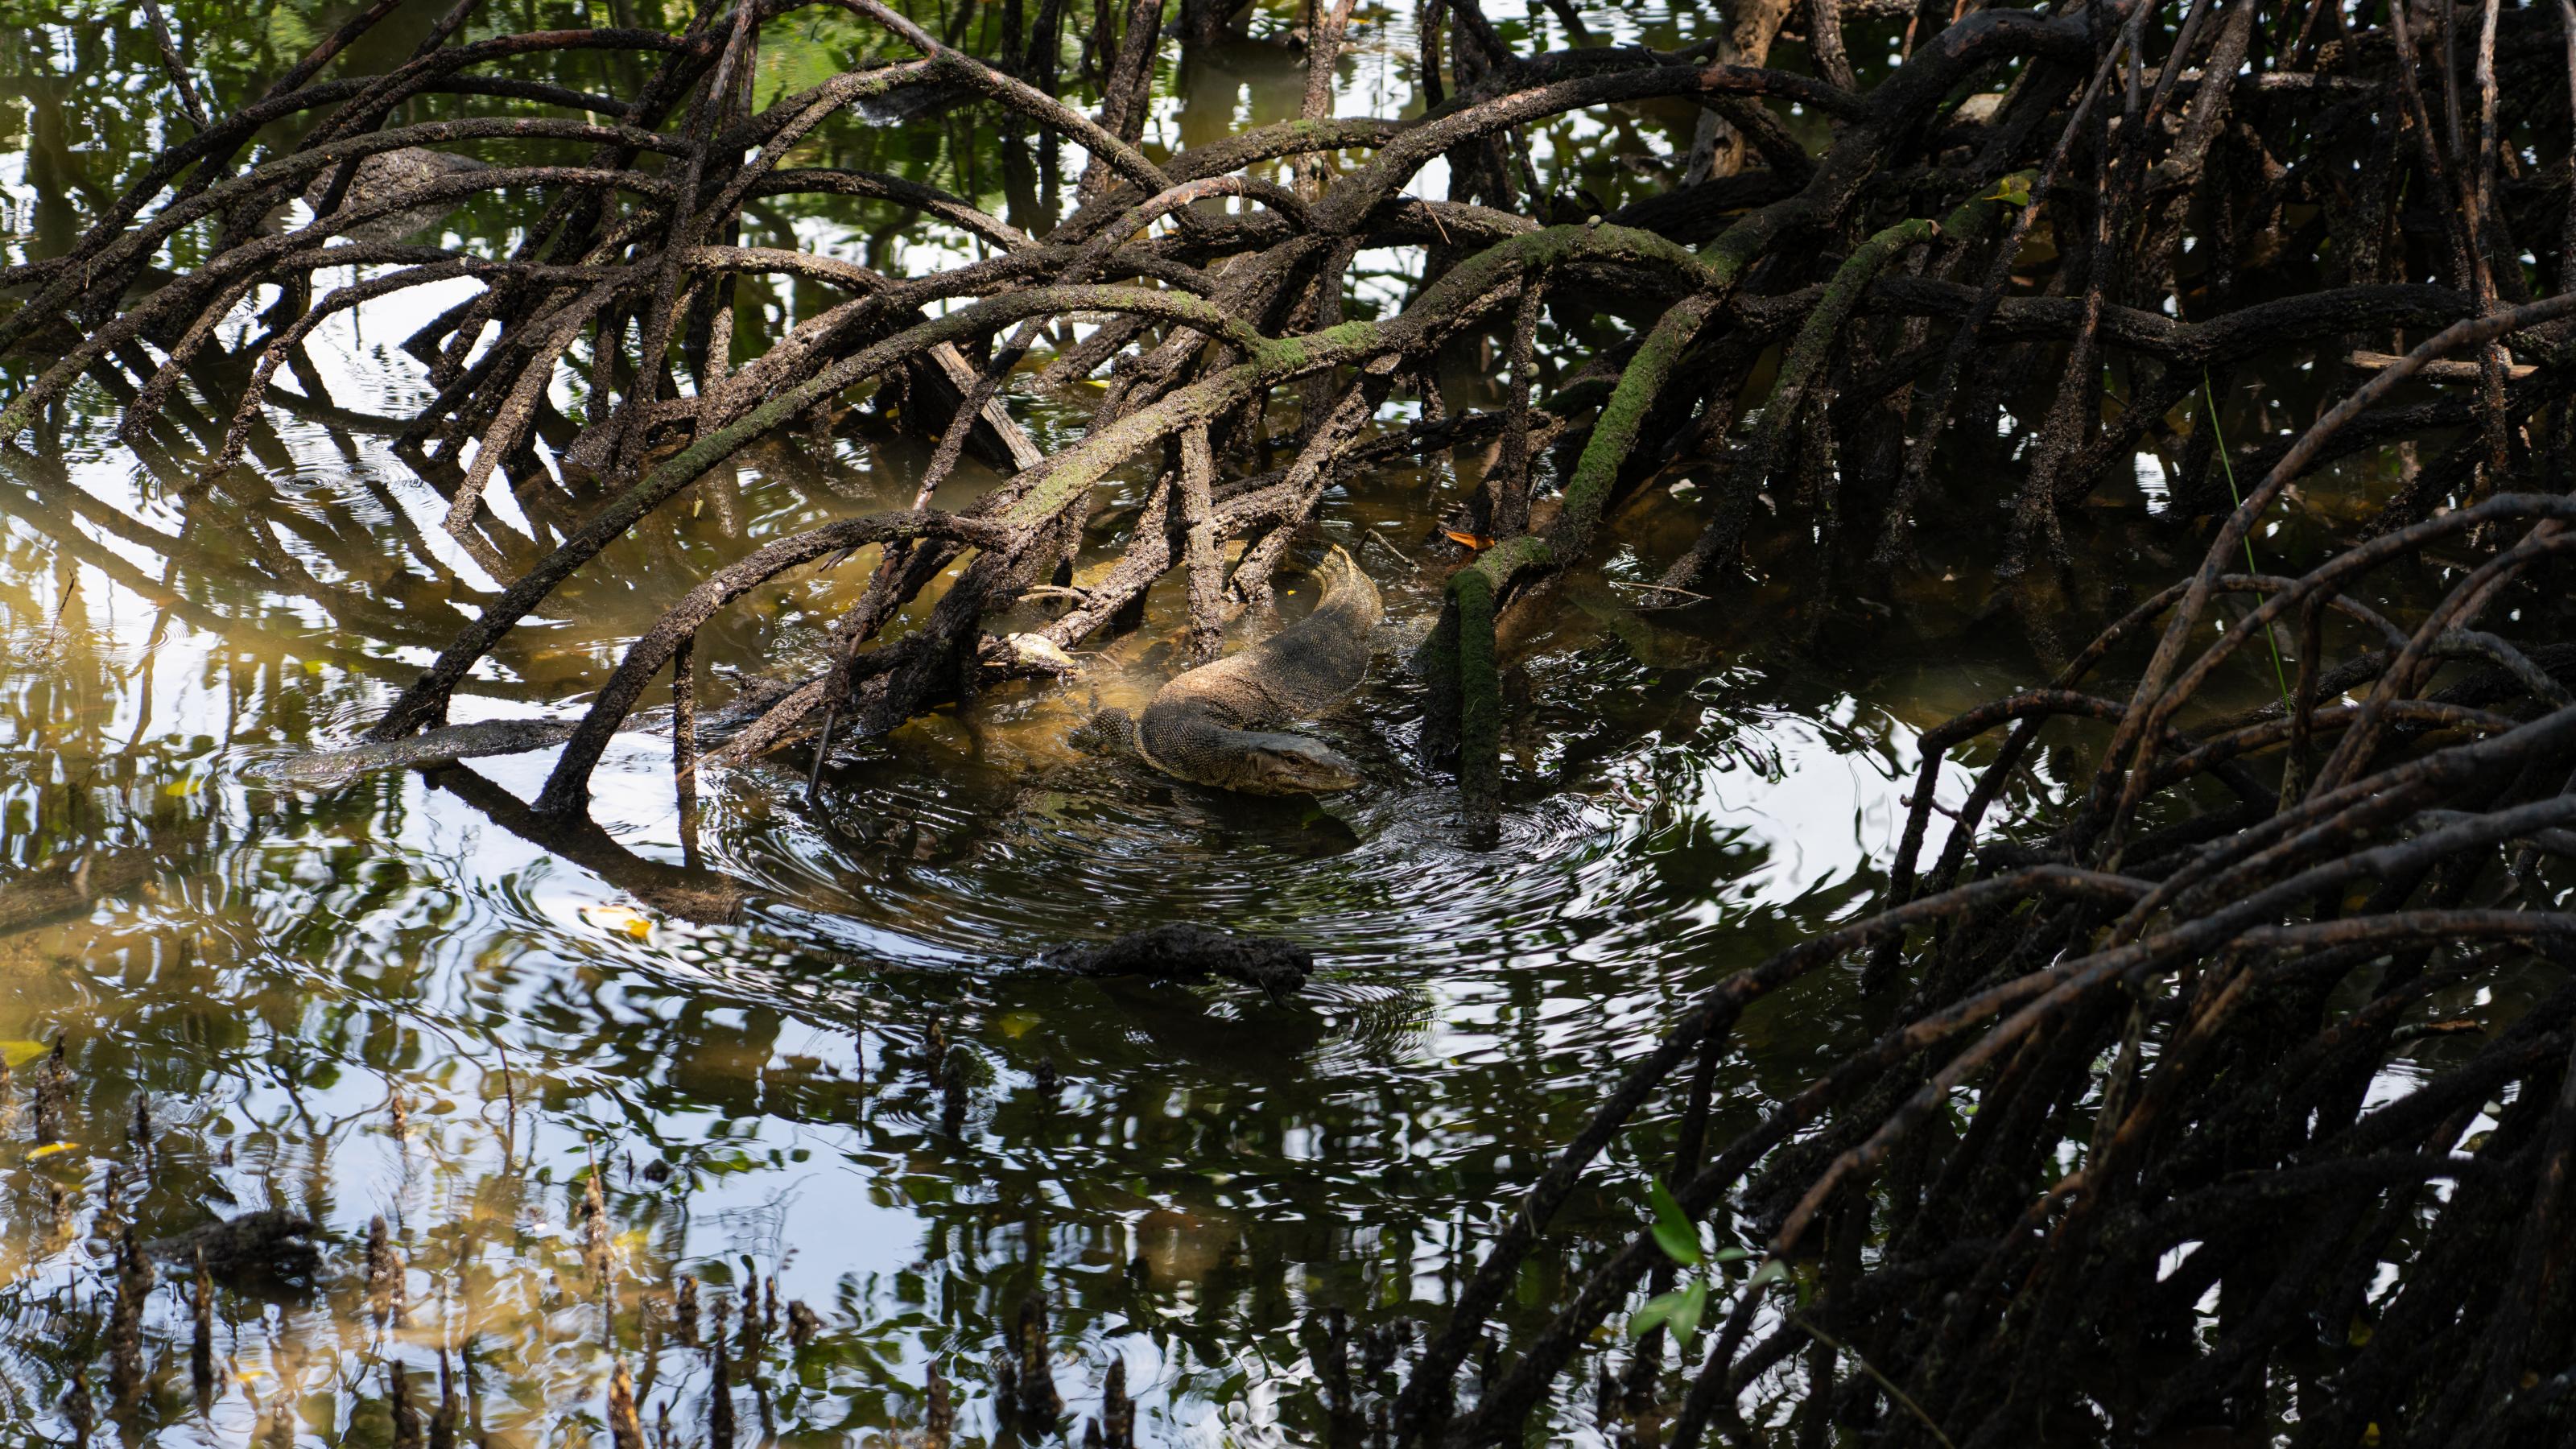 Ein großer Waran schwimmt zwischen verästelten Mangrovenwurzeln.